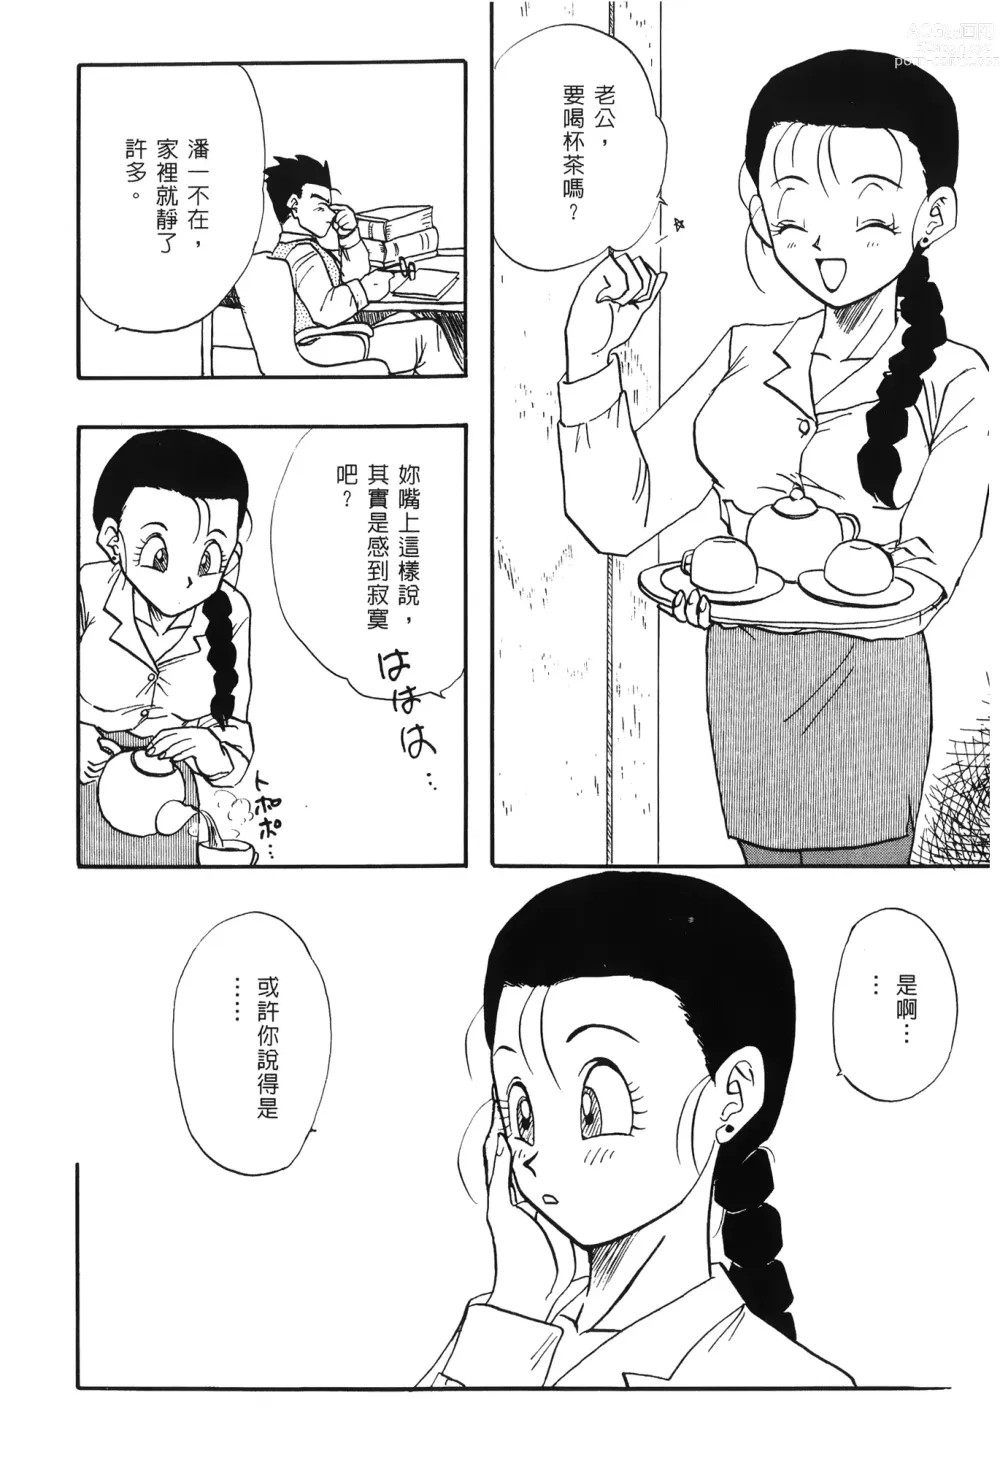 Page 146 of doujinshi ドラゴンパール 03